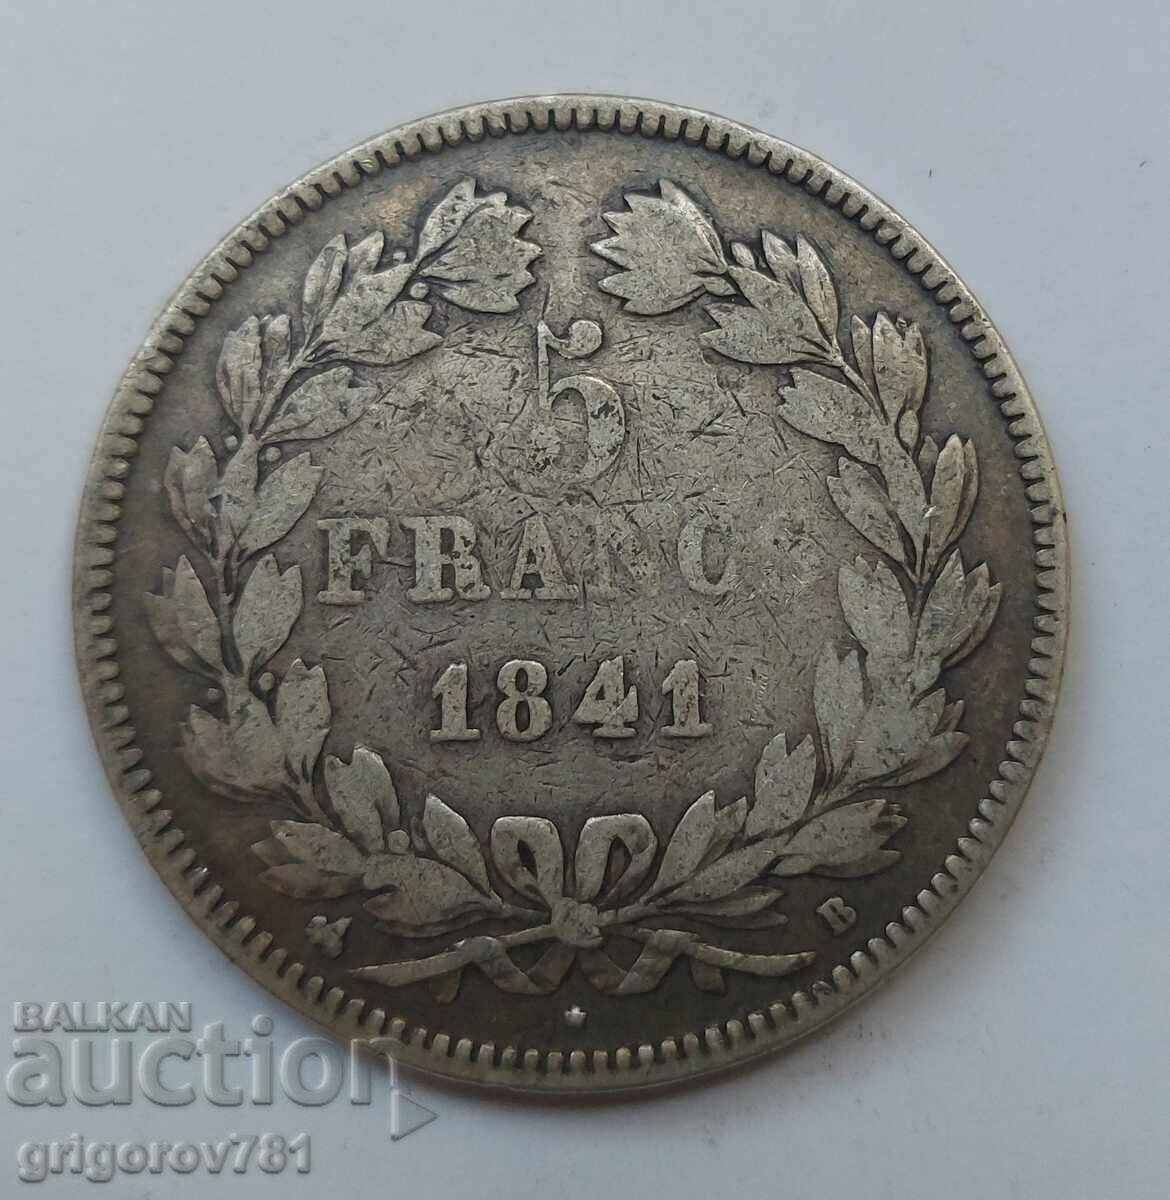 5 Φράγκα Ασήμι Γαλλία 1841 B - Ασημένιο νόμισμα #217